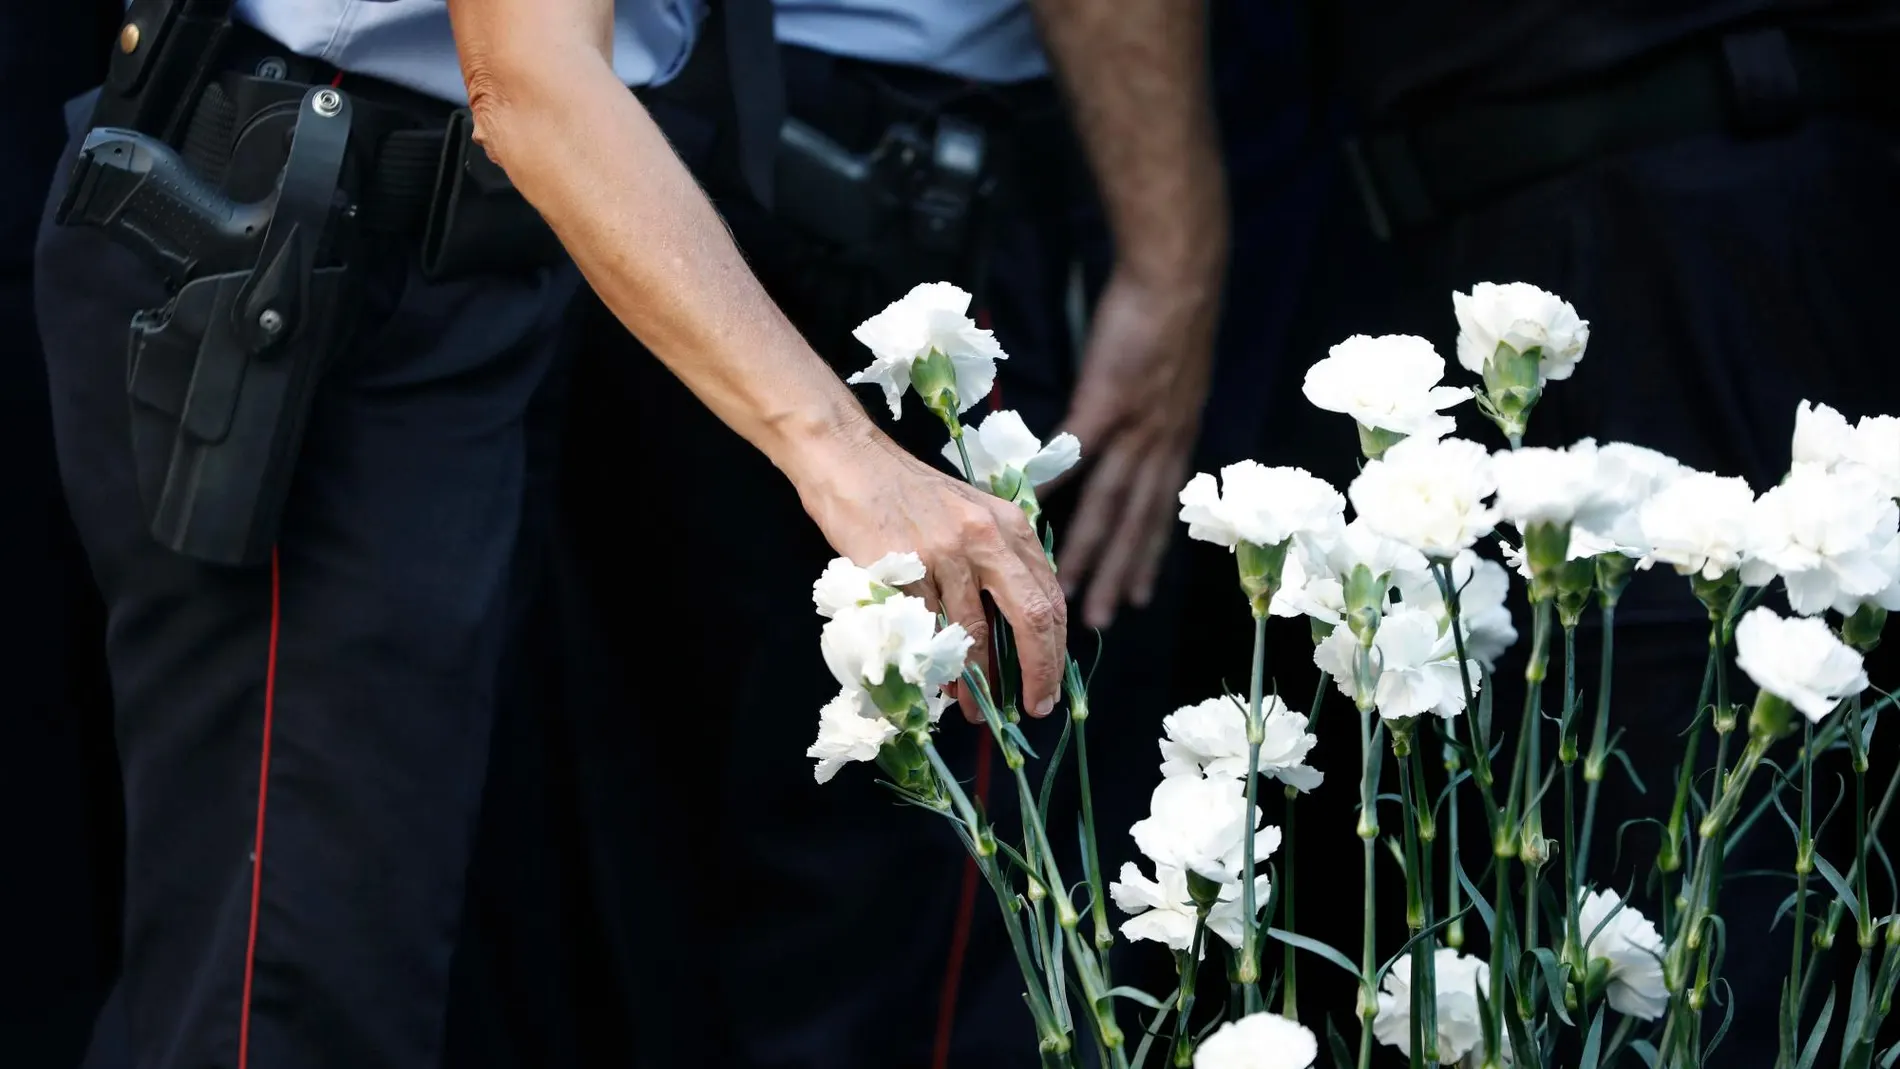 Miembros de los Mossos d’Esquadra colocando claveles blancos en honor a las víctimas